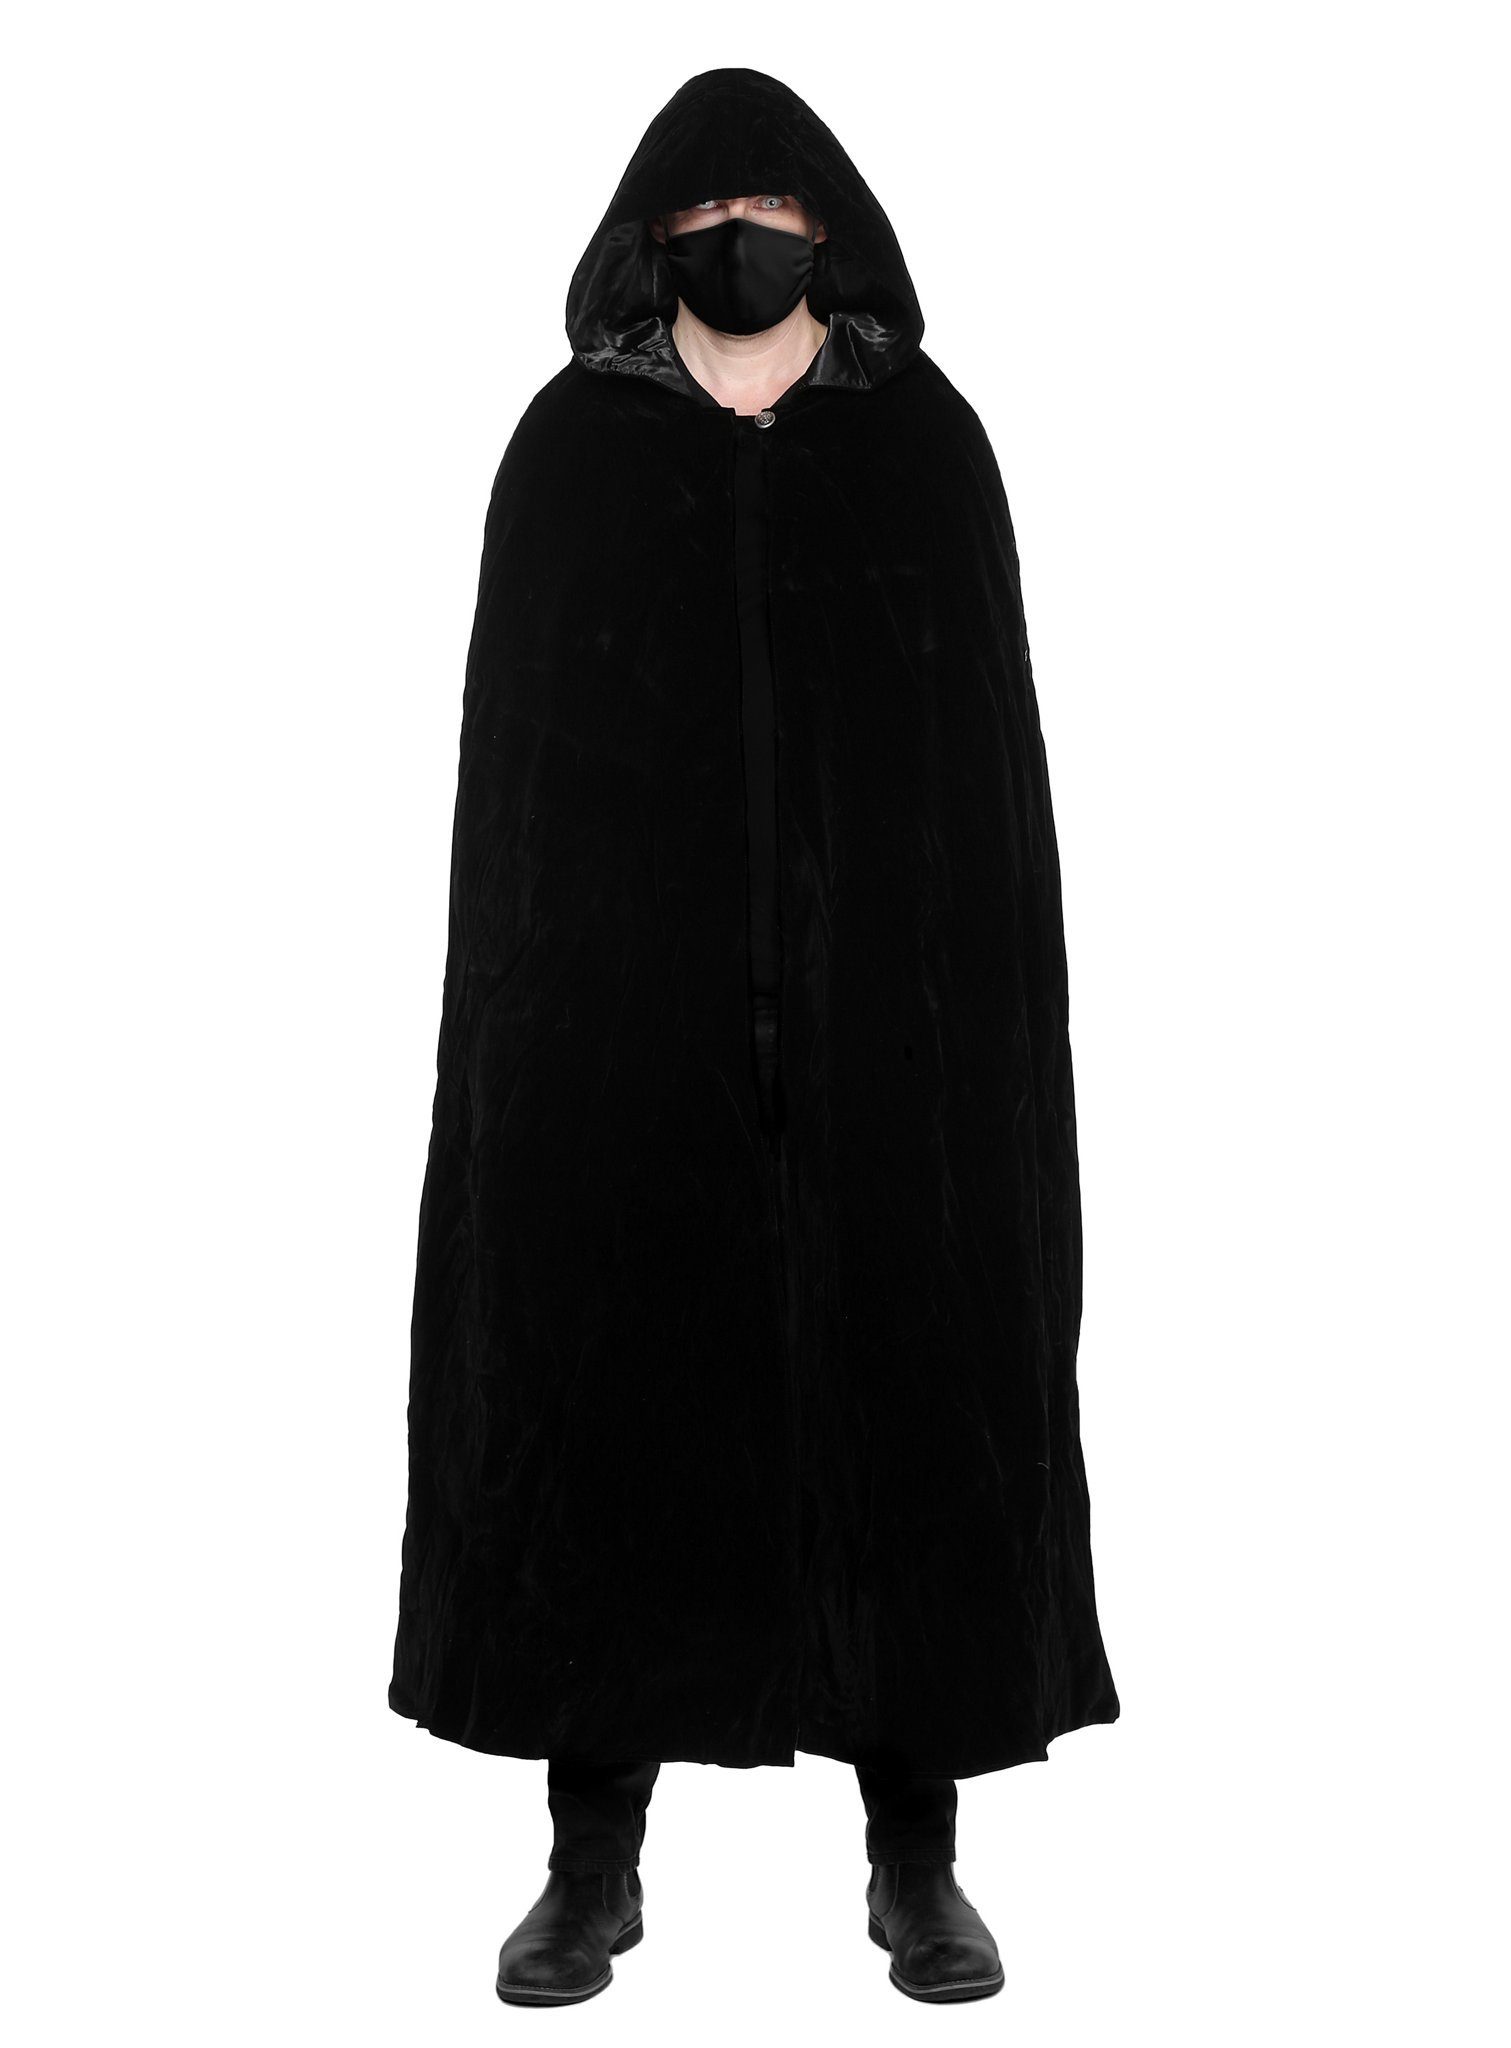 Maskworld Kostüm Schwarze Stoffmaske mit schwarzem Umhang, 2-teiliges Set zur schnellen, gruseligen Verwandlung